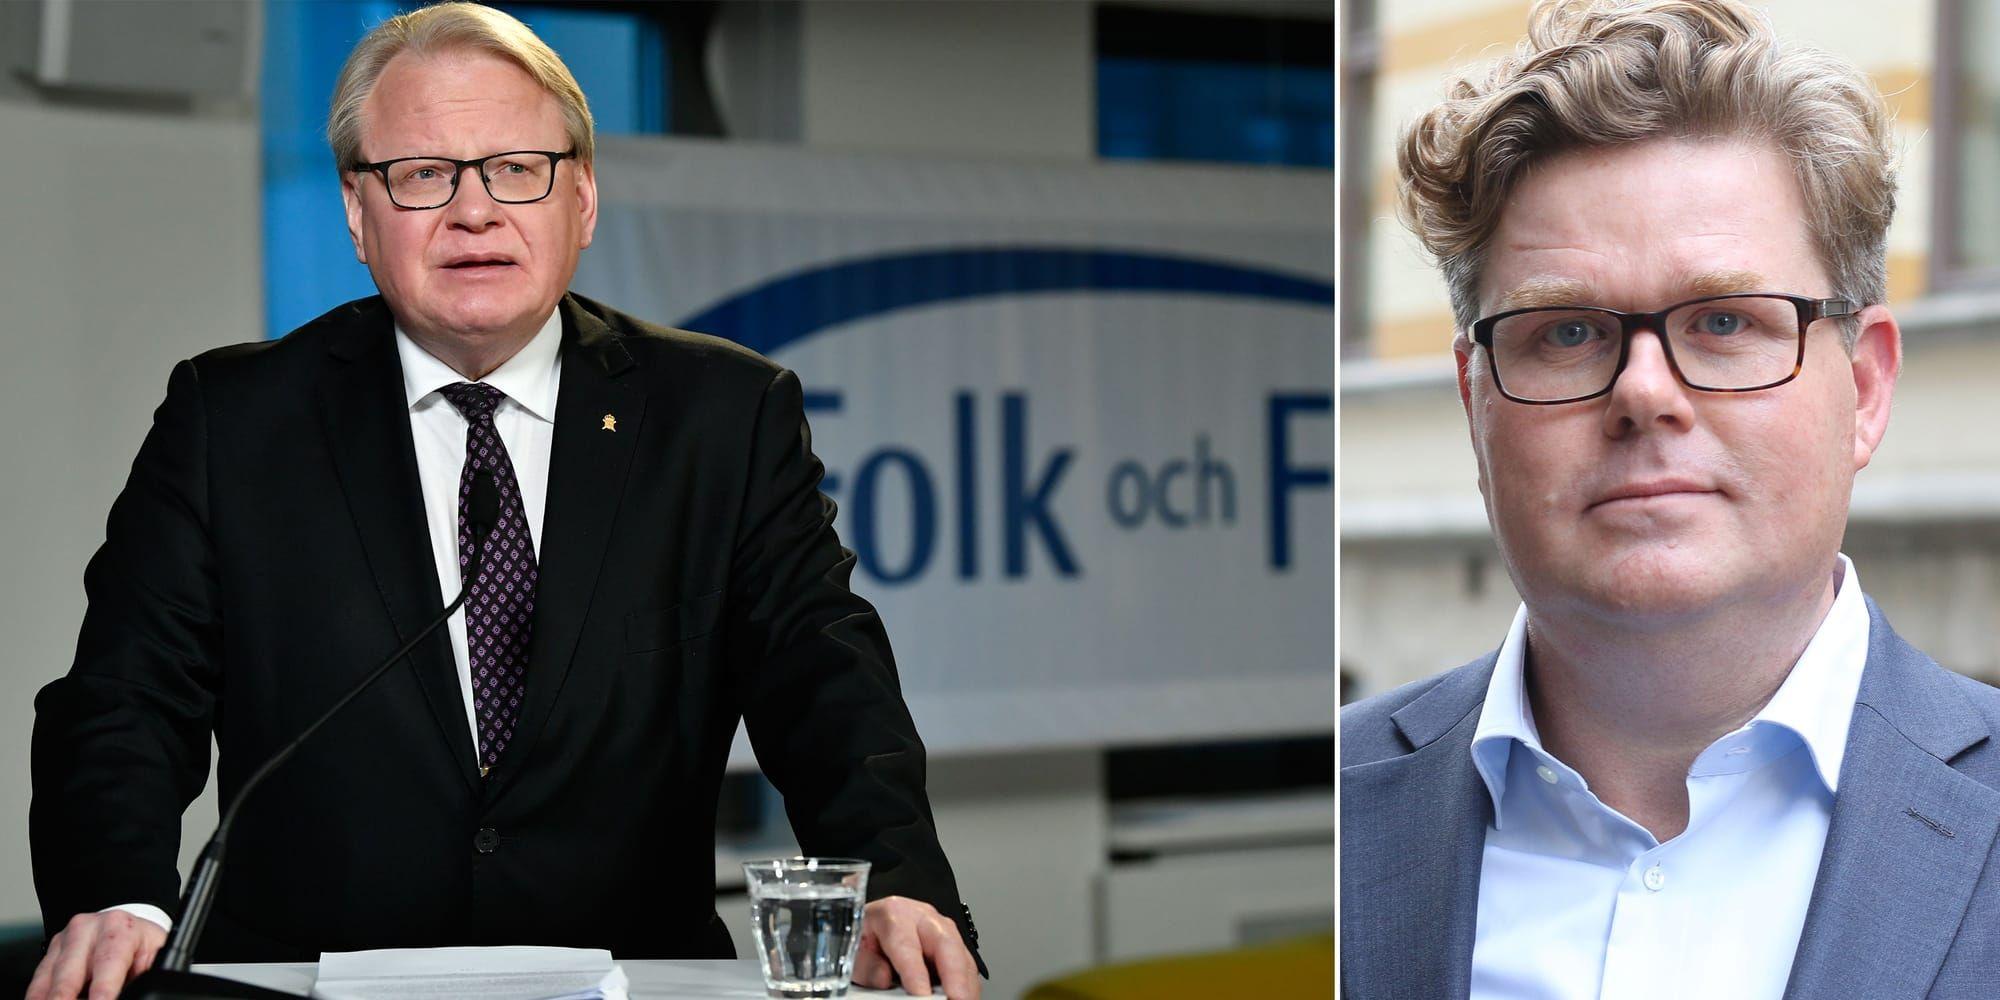 Peter Hultqvists artikel handlar i allt väsentligt om Sverigedemokraterna, men har udden mot Moderaterna, skriver debattören.